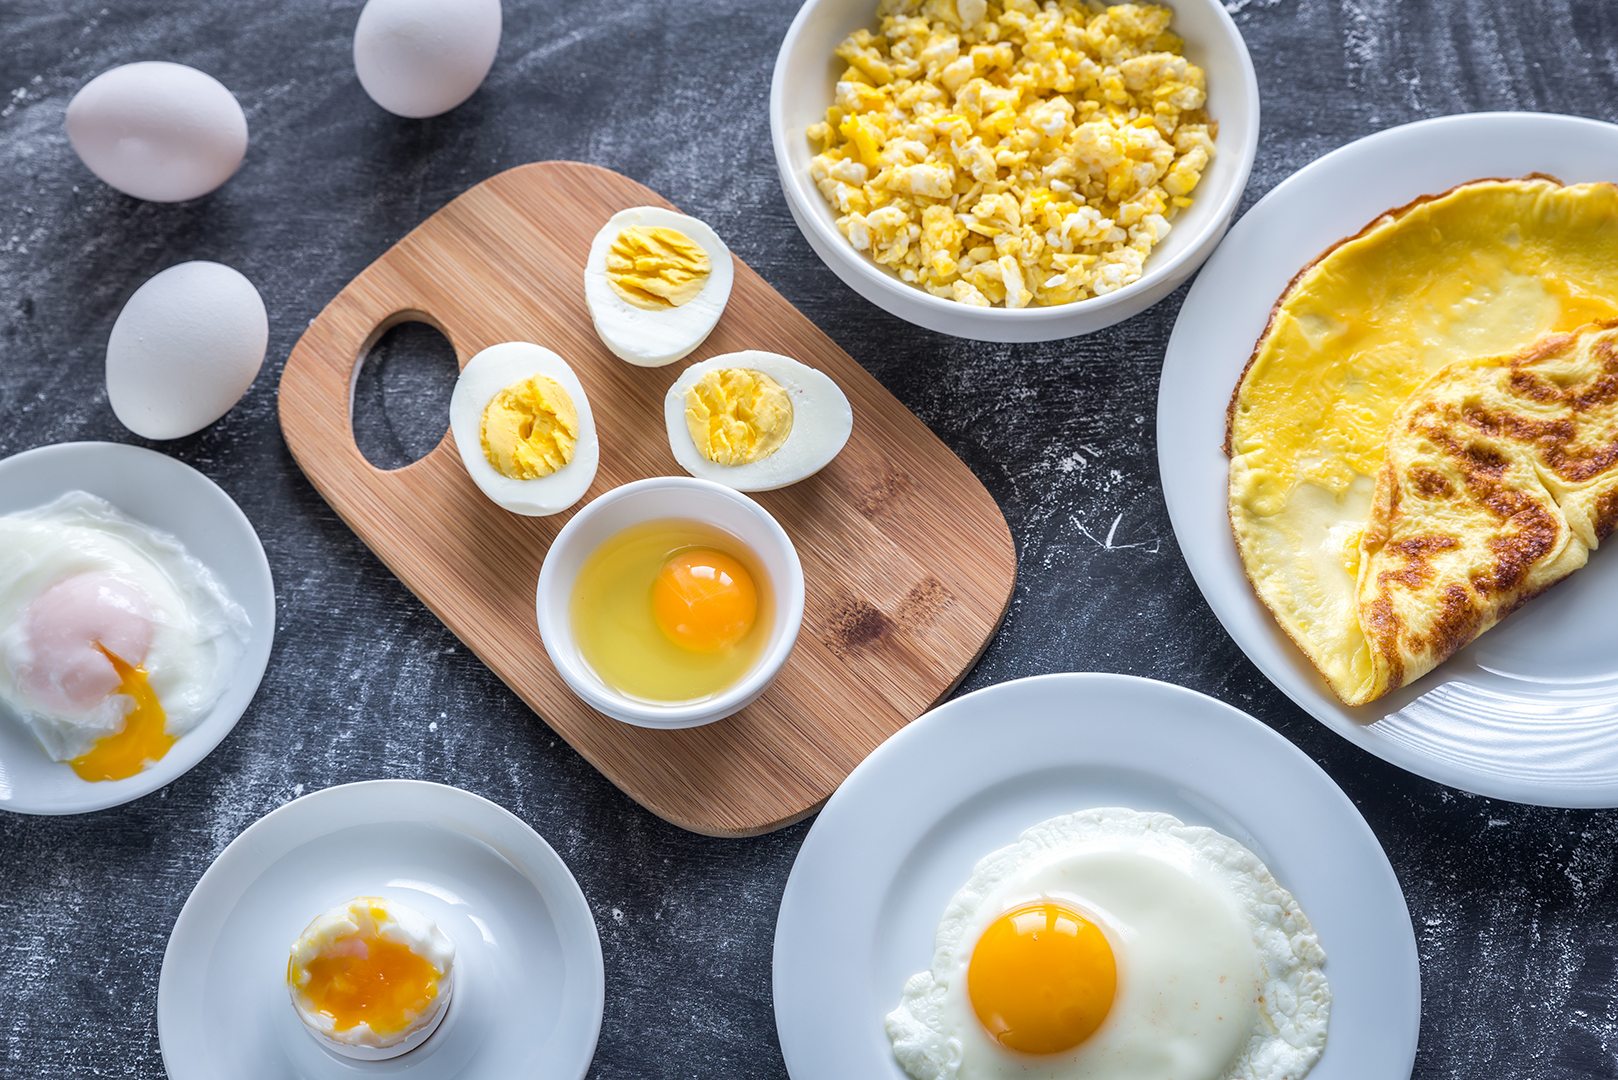 Tres o más huevos a la semana aumentan el riesgo de enfermedades cardíacas y muerte prematura, según un estudio